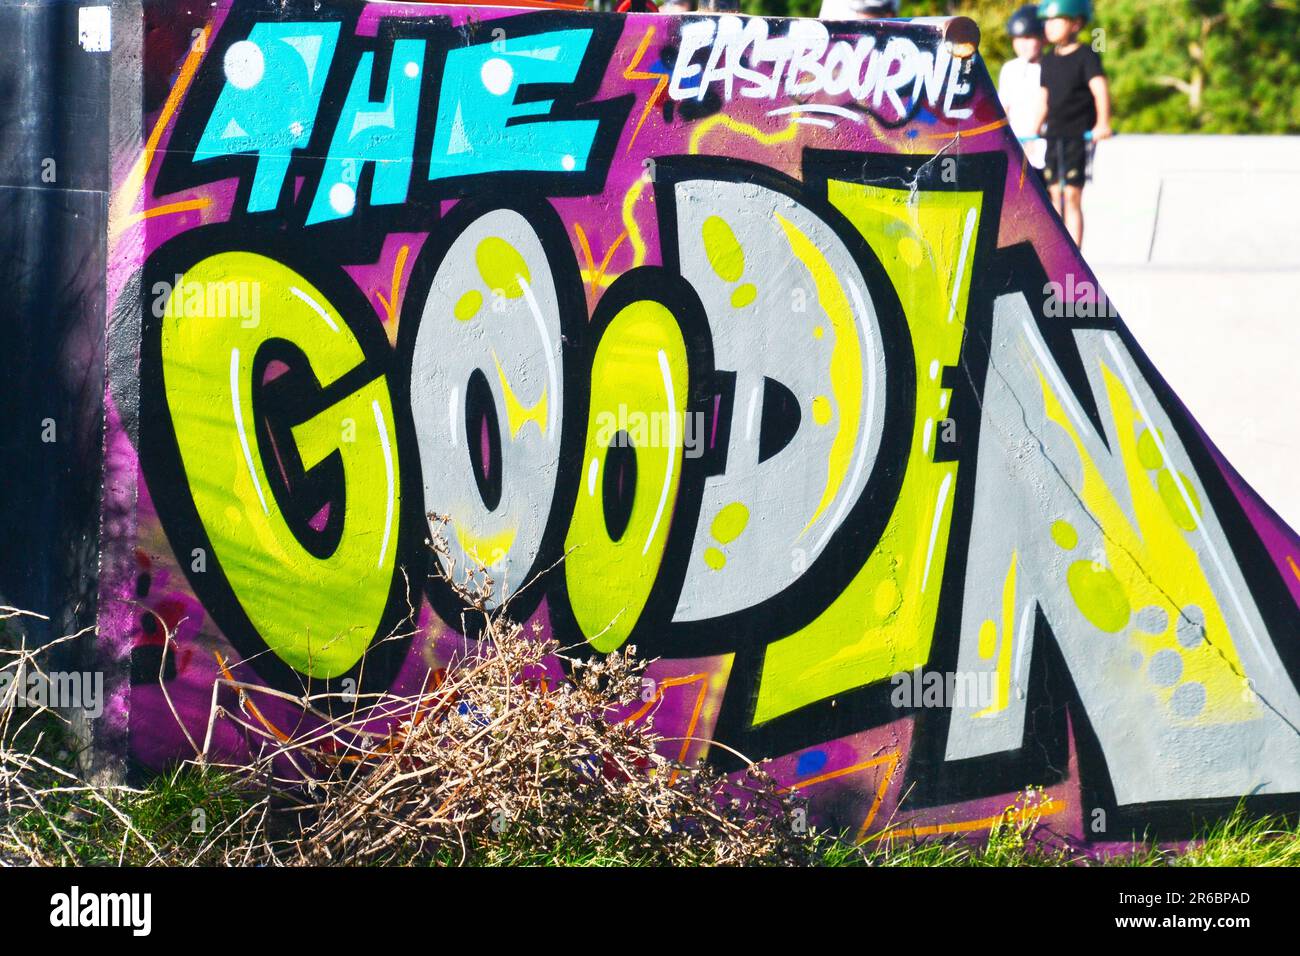 The Gooden Skate Park. Street Art Graffiti on the side of the Skate Park along Eastbourne Promenade, East Sussex, UK Stock Photo